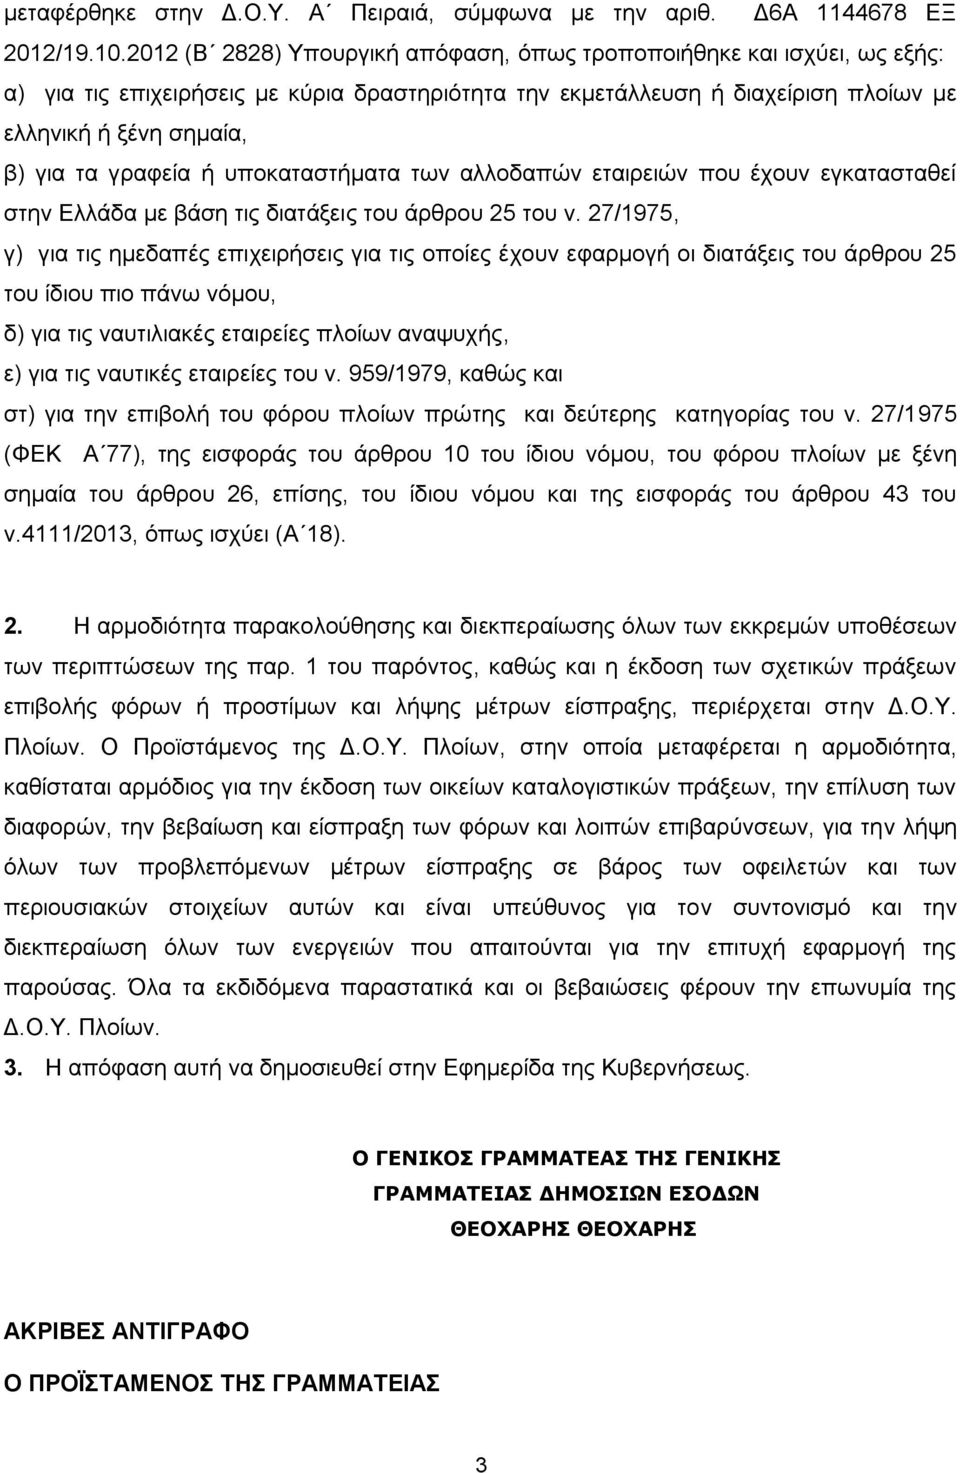 γραφεία ή υποκαταστήματα των αλλοδαπών εταιρειών που έχουν εγκατασταθεί στην Ελλάδα με βάση τις διατάξεις του άρθρου 25 του ν.